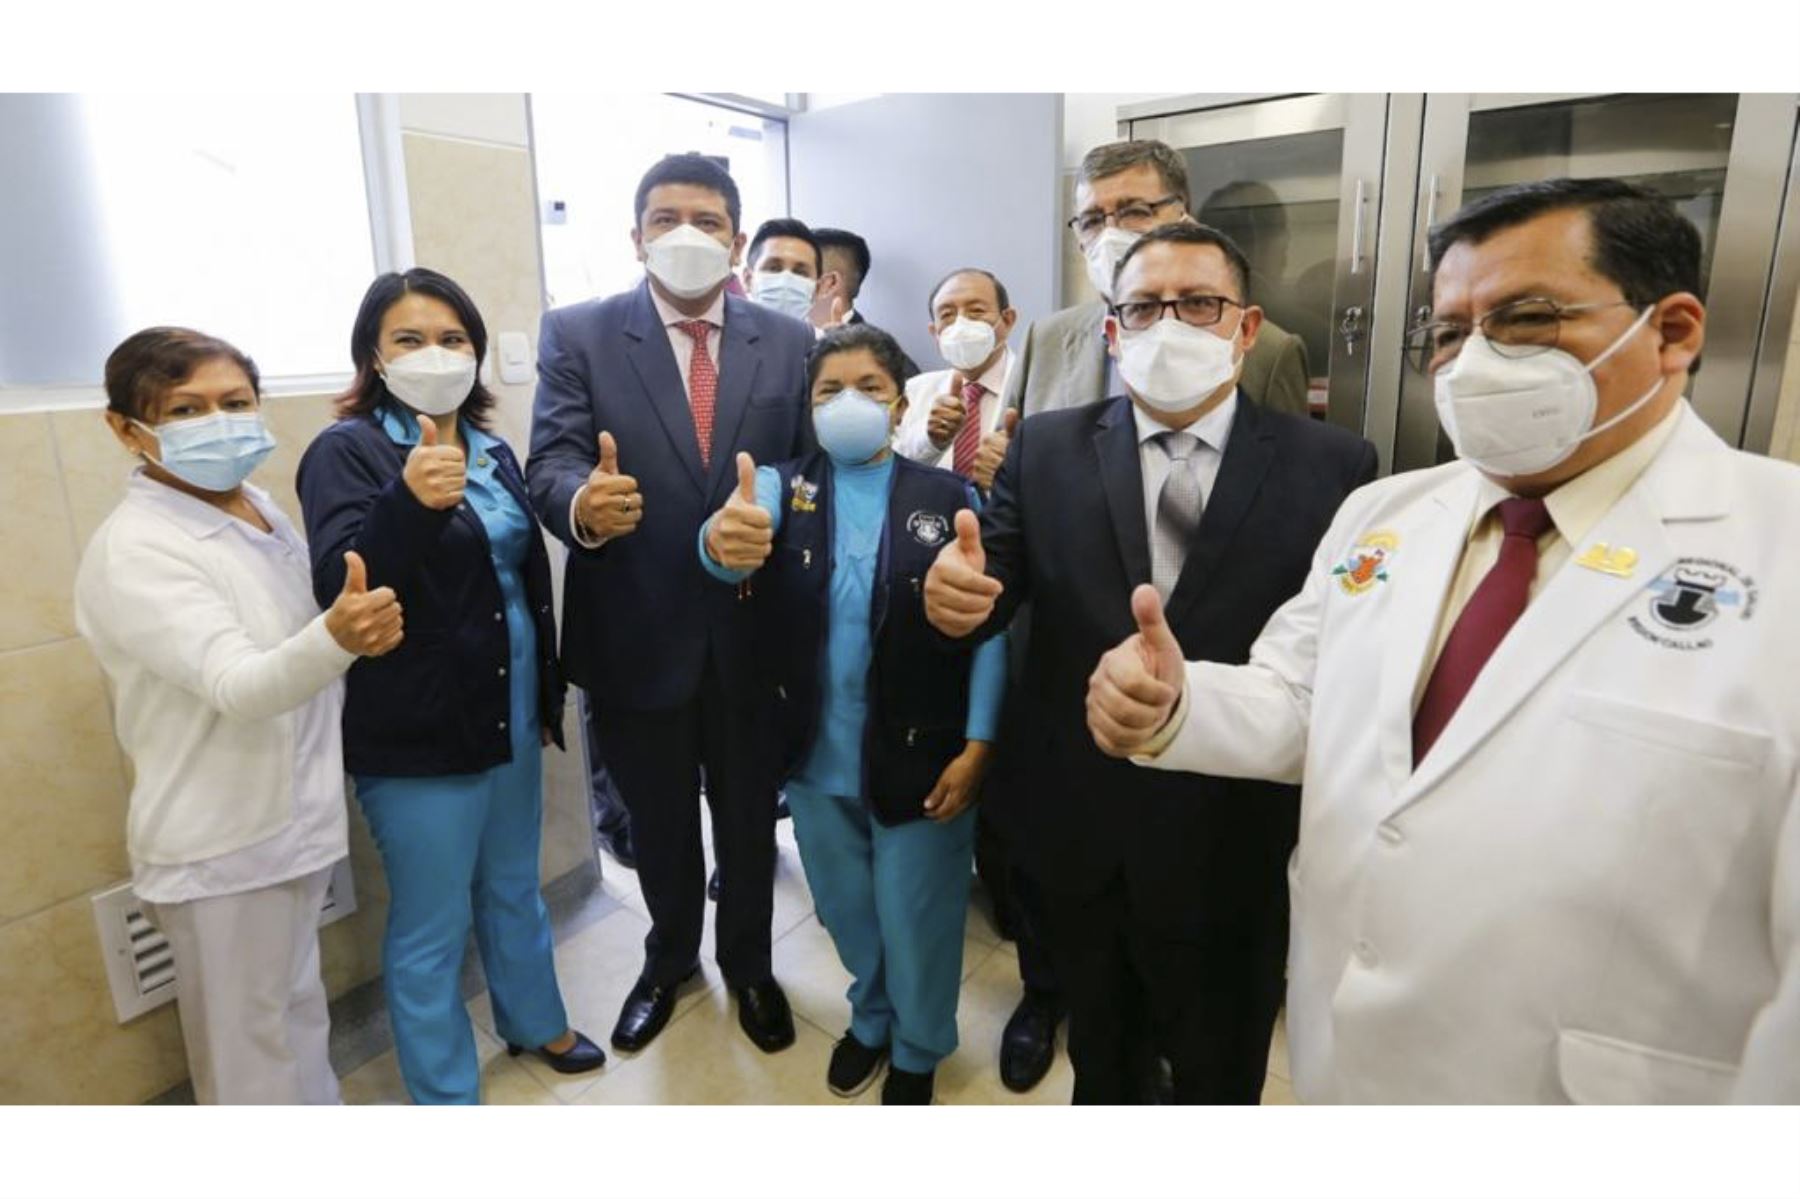 Minsa inaugura centro de salud Bocanegra en región Callao